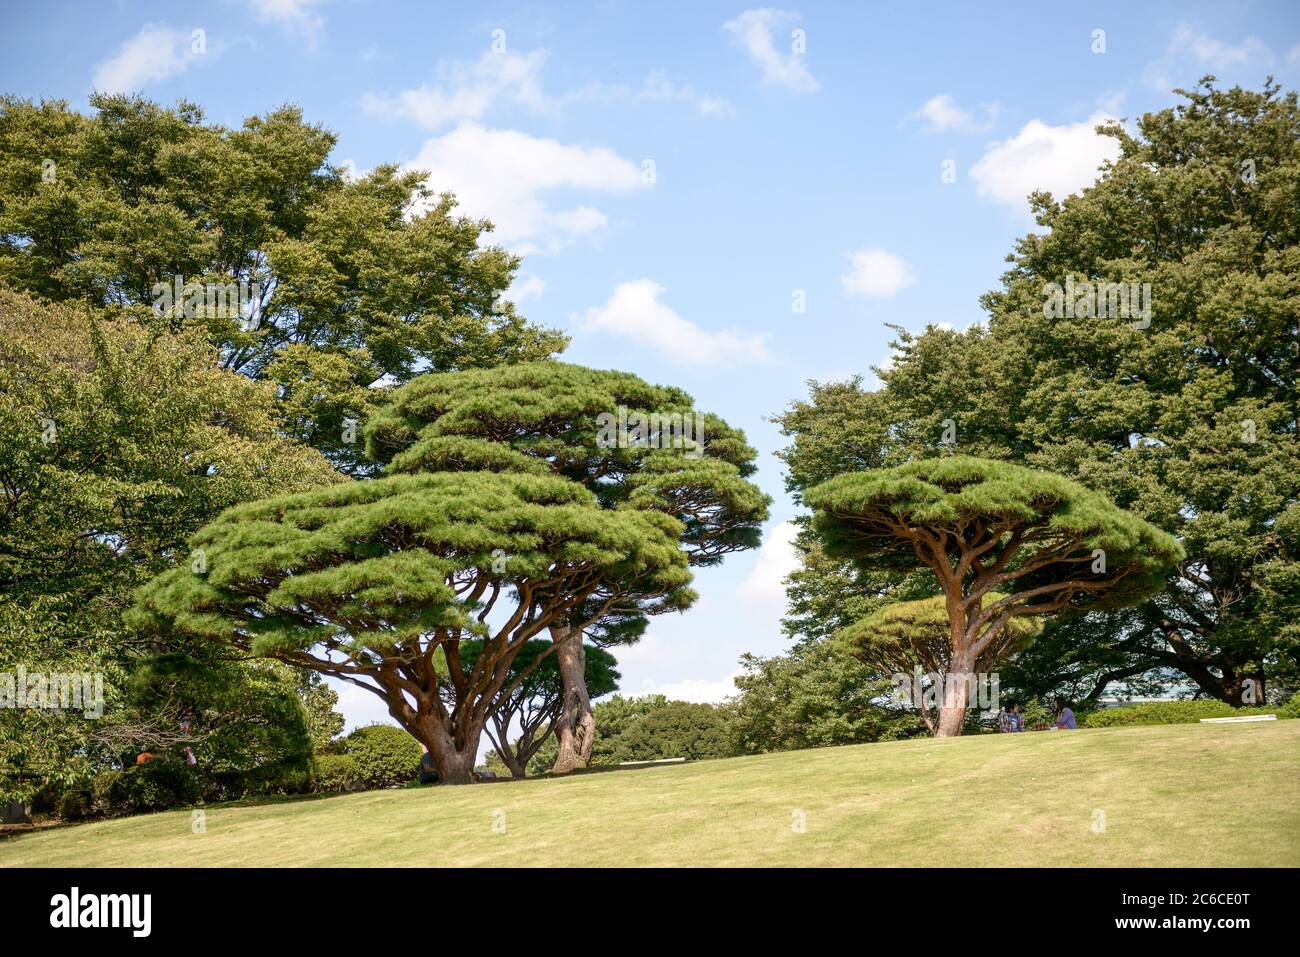 Japanische Rot-Kiefer, Pinus densiflora Umbraculifera, Shinjuku Gyoen Garden, Kaiserlicher Park Shinjuku, Japanese red pine, Pinus densiflora Umbracul Stock Photo